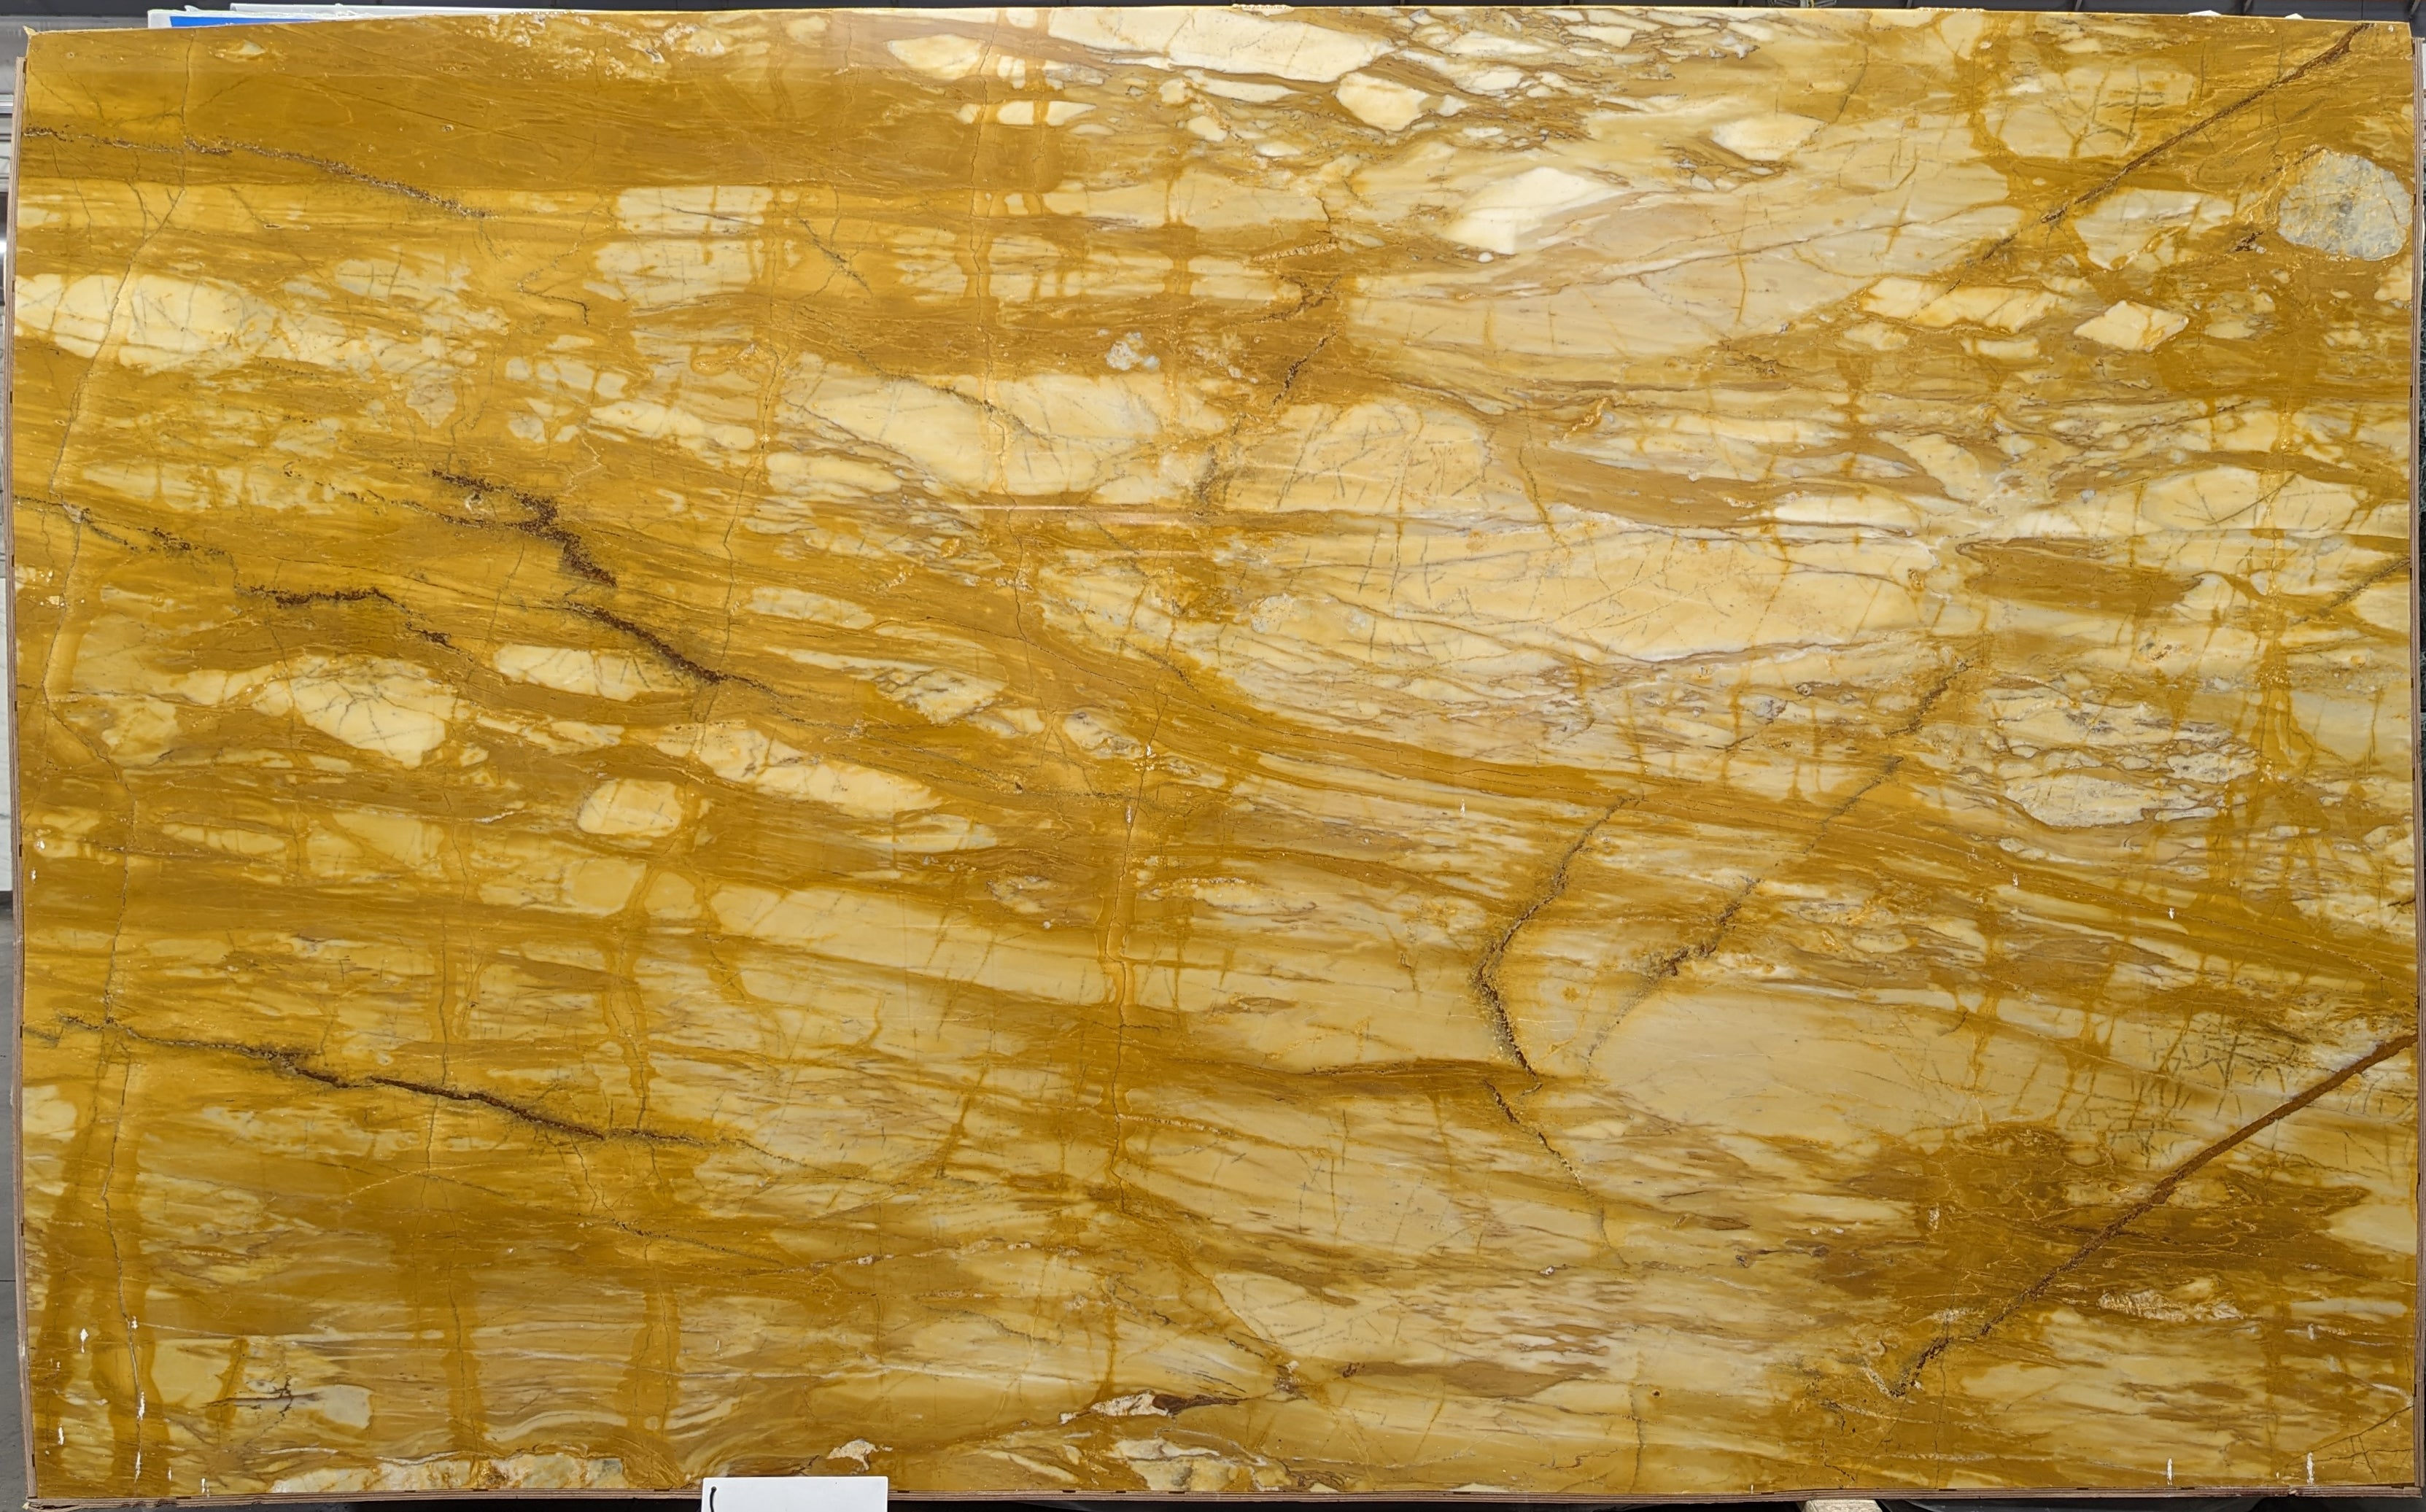  Giallo Siena Marble Slab 3/4  Polished Stone - 26568#34 -  73x120 